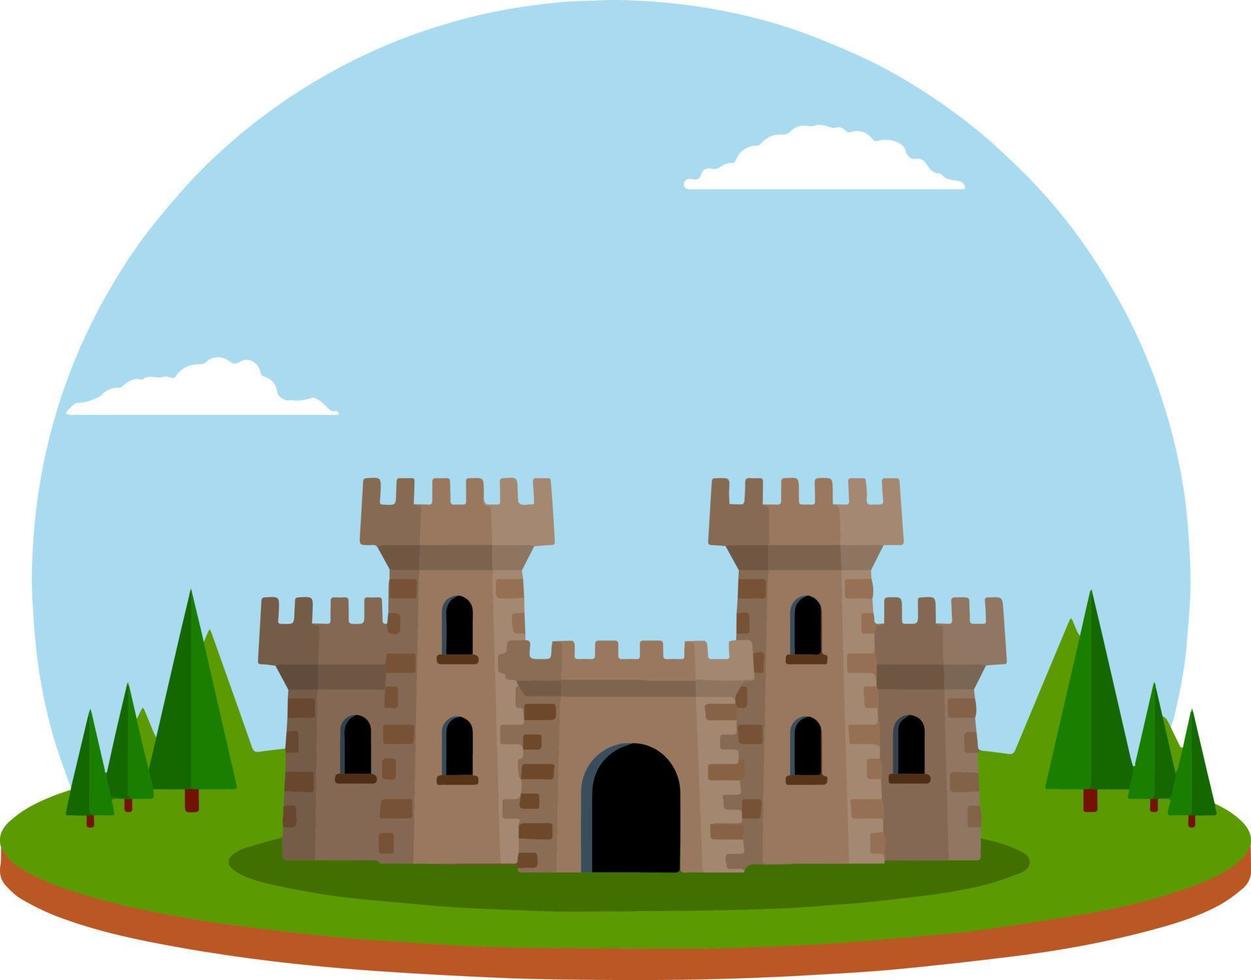 castillo con torres y murallas. construcción de defensa. arquitectura europea medieval. hogar de caballero y rey. protección y seguridad. icono plano para aplicación y juego vector